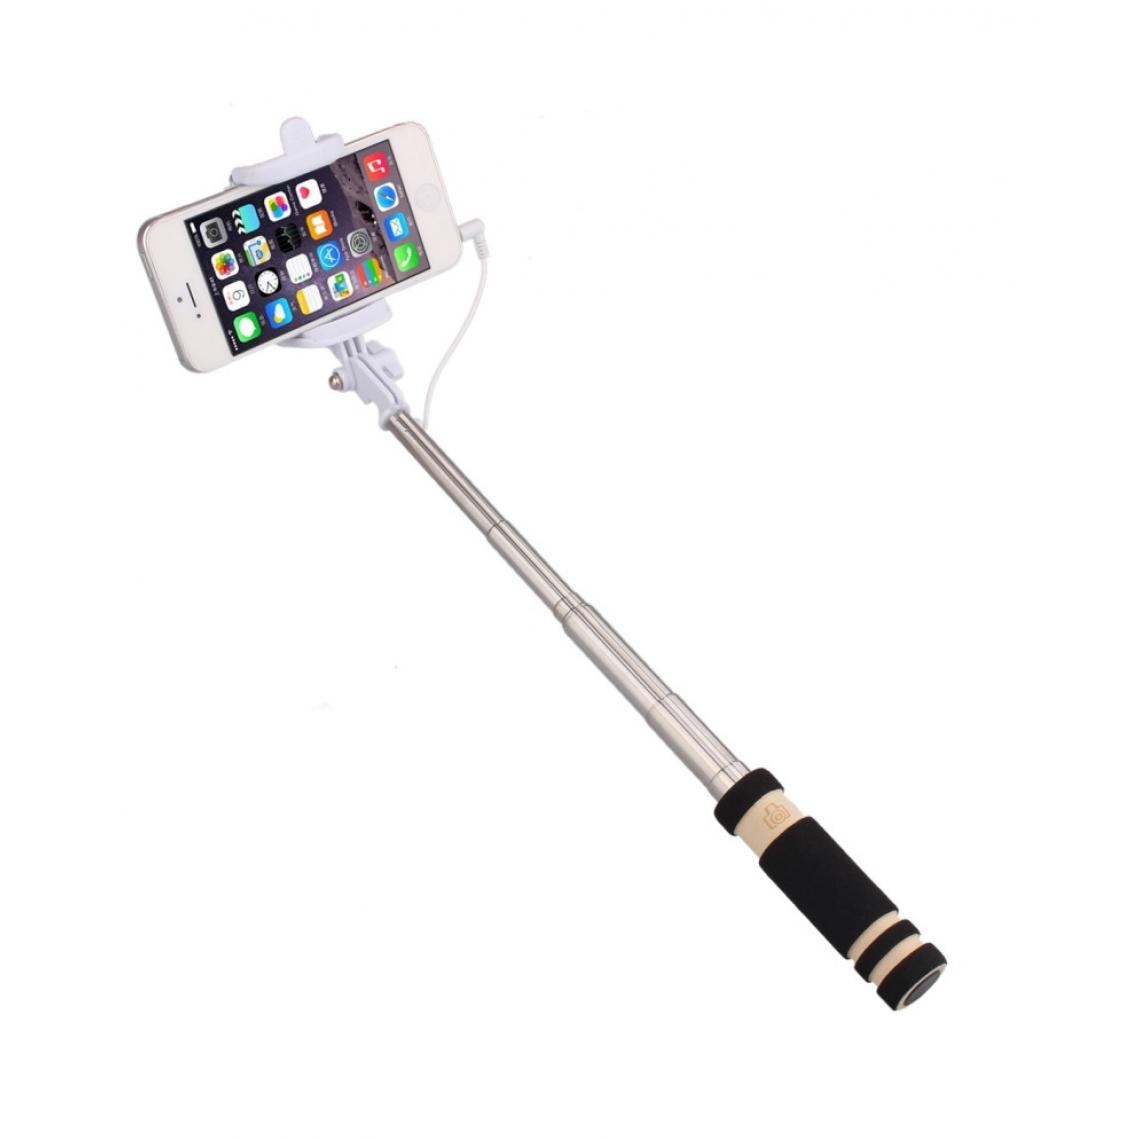 Shot - Mini Perche Selfie pour XIAOMI Mi Note 10 Smartphone avec Cable Jack Selfie Stick Android IOS Reglable Bouton Photo (NOIR) - Autres accessoires smartphone